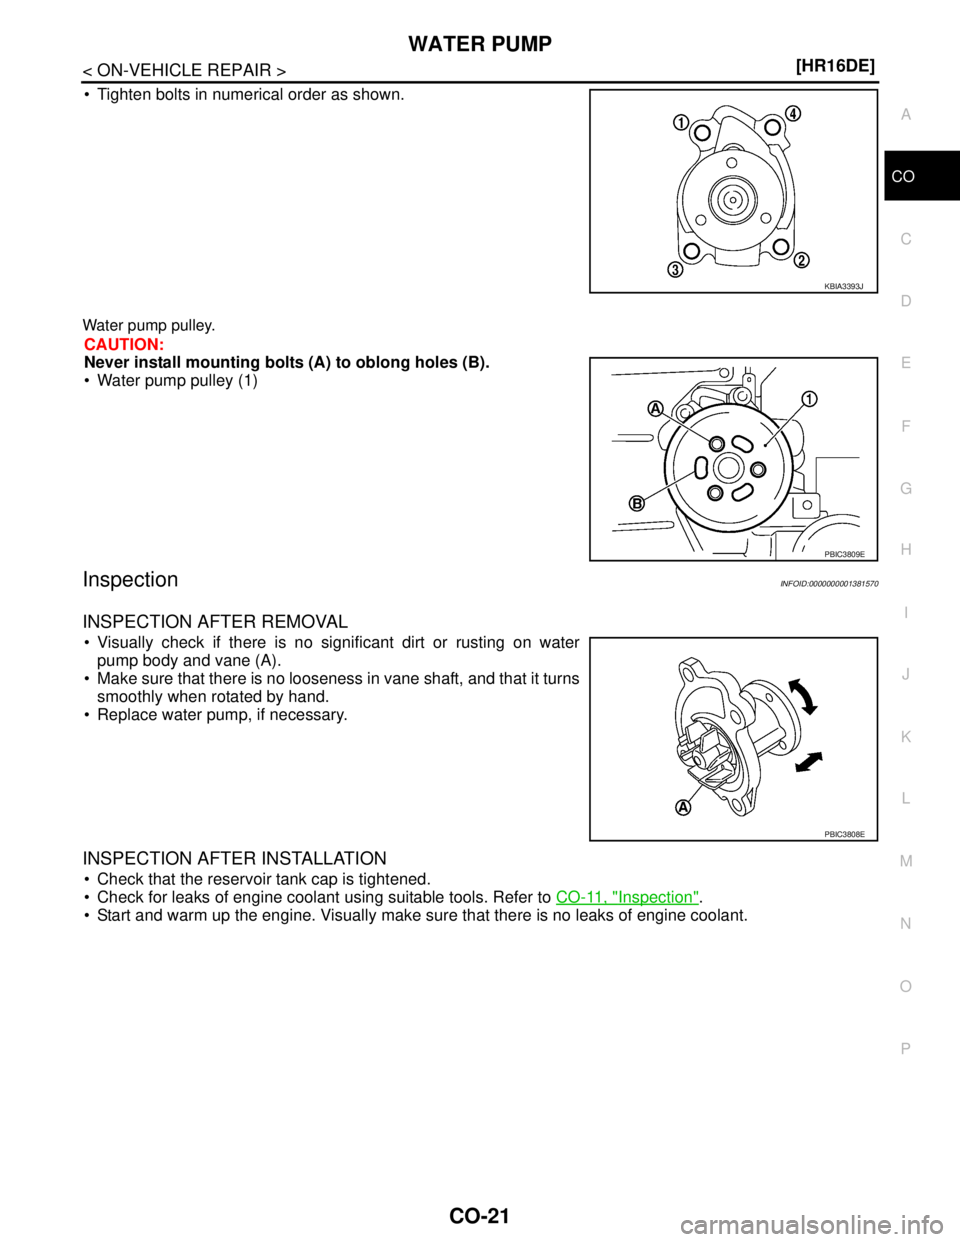 NISSAN TIIDA 2007  Service Repair Manual WATER PUMP
CO-21
< ON-VEHICLE REPAIR >[HR16DE]
C
D
E
F
G
H
I
J
K
L
MA
CO
N
P O
 Tighten bolts in numerical order as shown.
Water pump pulley.
CAUTION:
Never install mounting bolts (A) to oblong holes